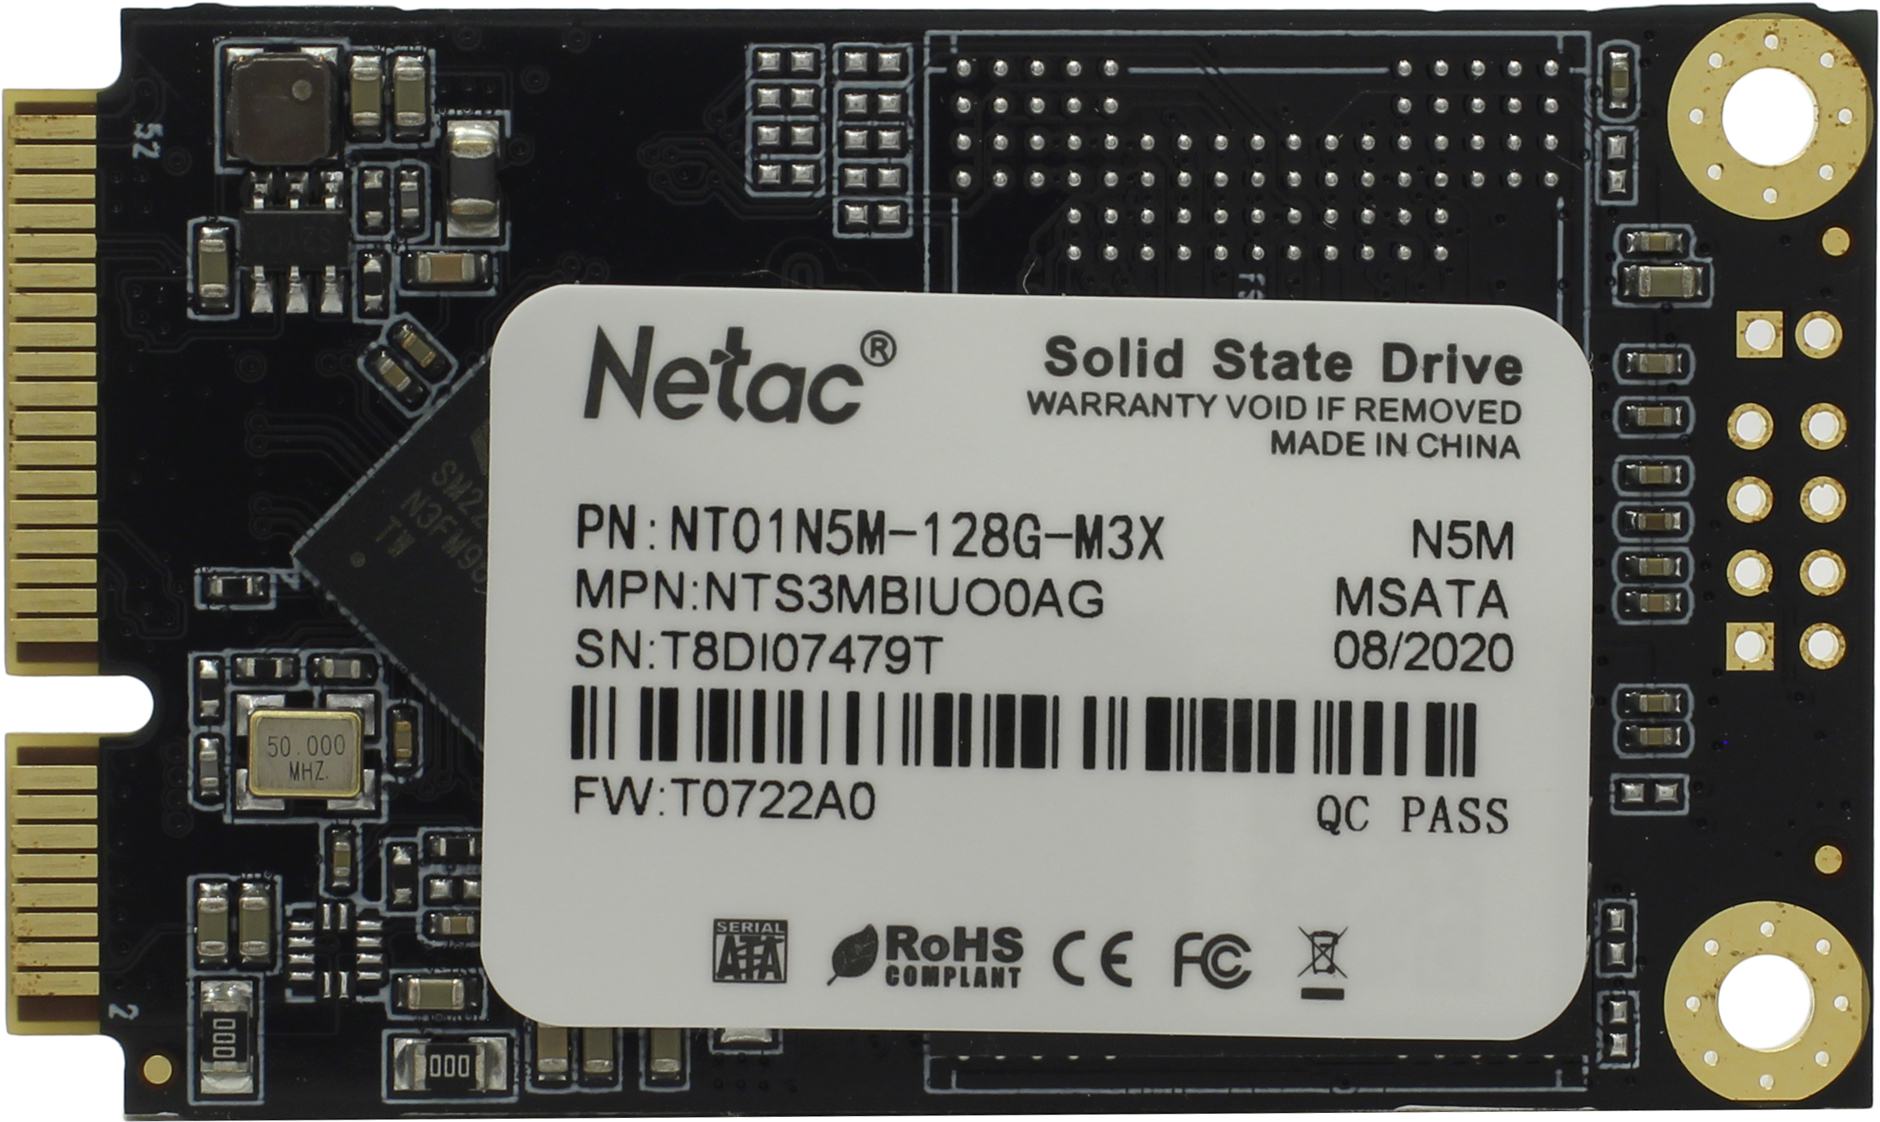 Твердотельный накопитель Netac SSD N5M 512GB mSATA SATAIII 3D NAND, R/W up to 540/490MB/s, TBW 280TB, 3y wty